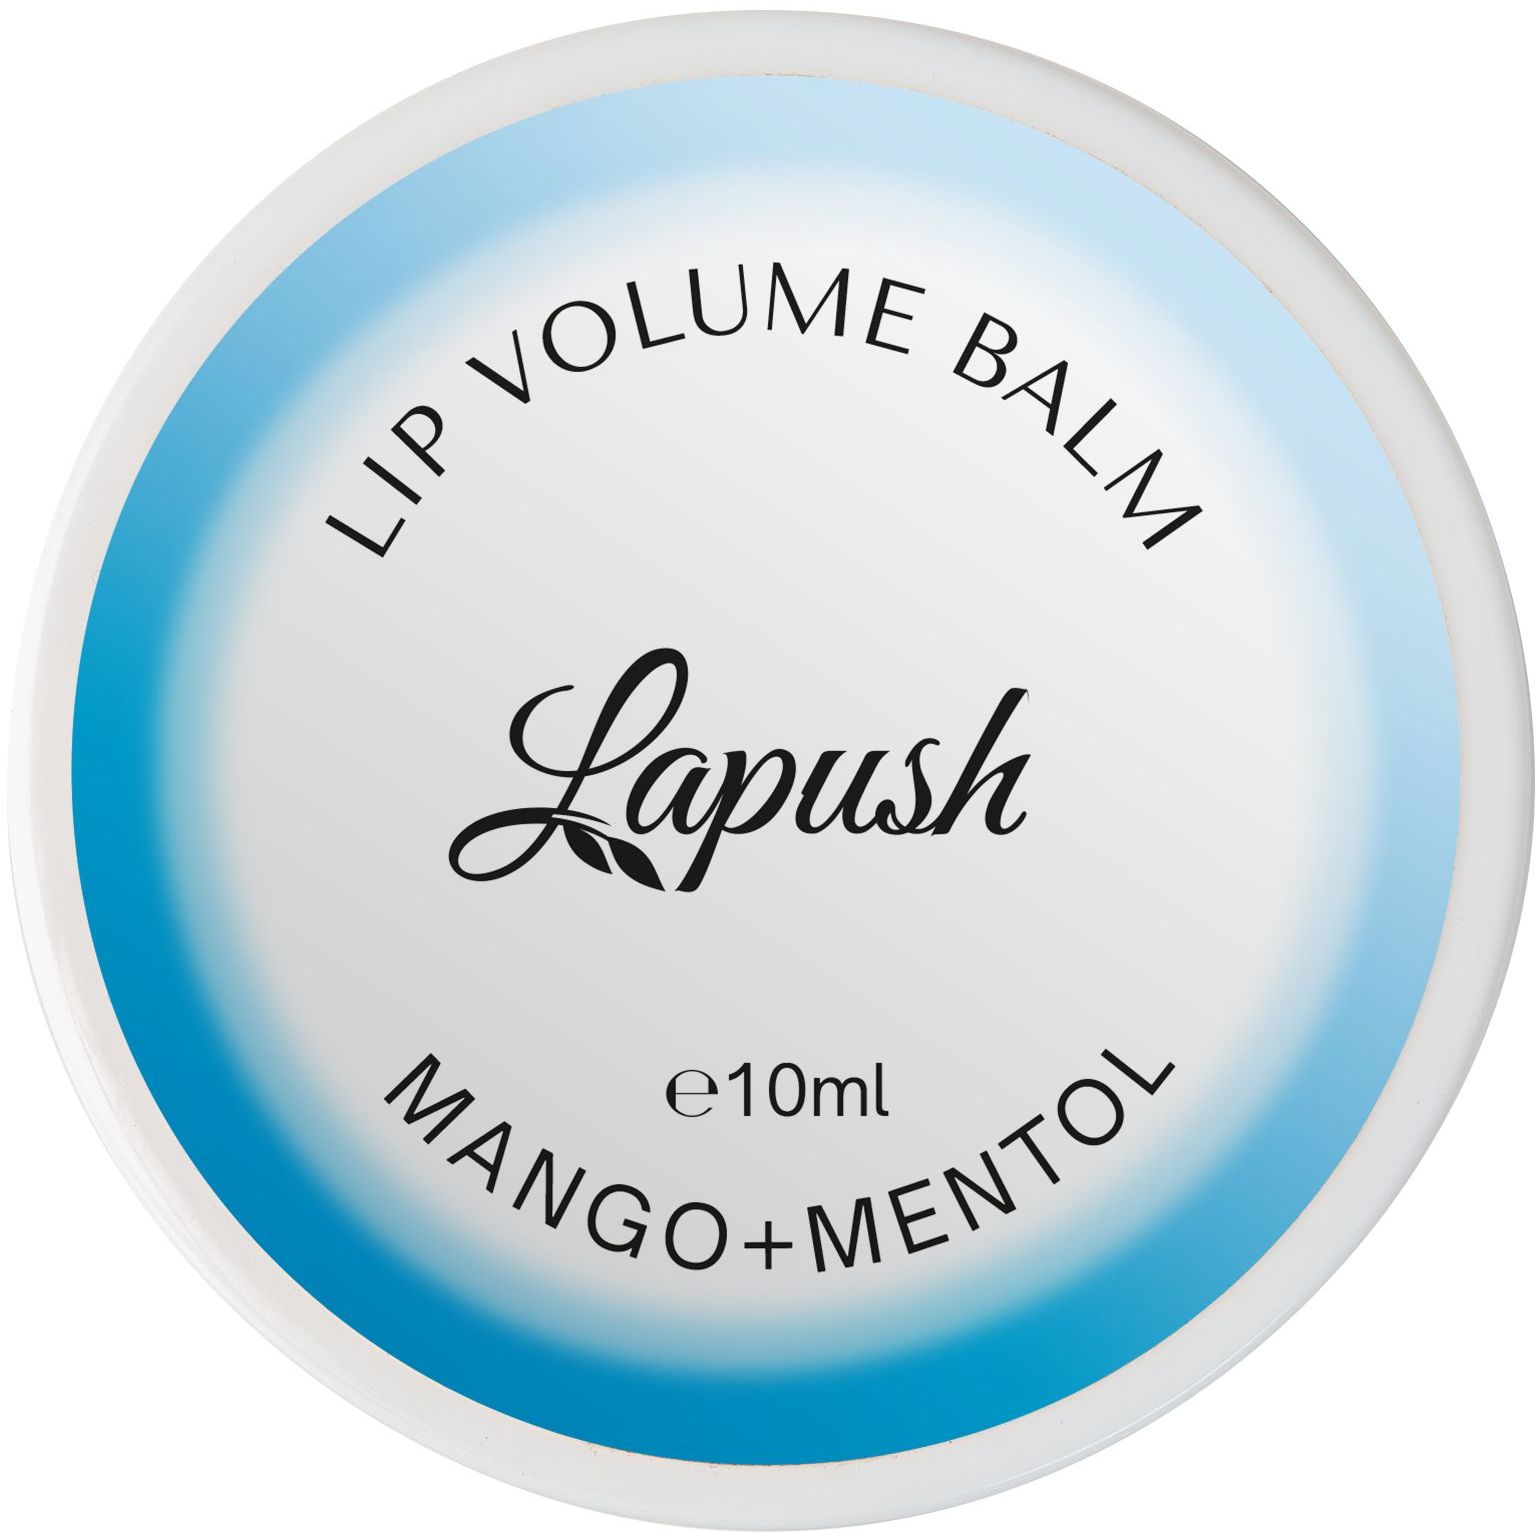 Бальзам для губ Lapush Mango + Mentol, с эффектом объема, 10 мл - фото 1